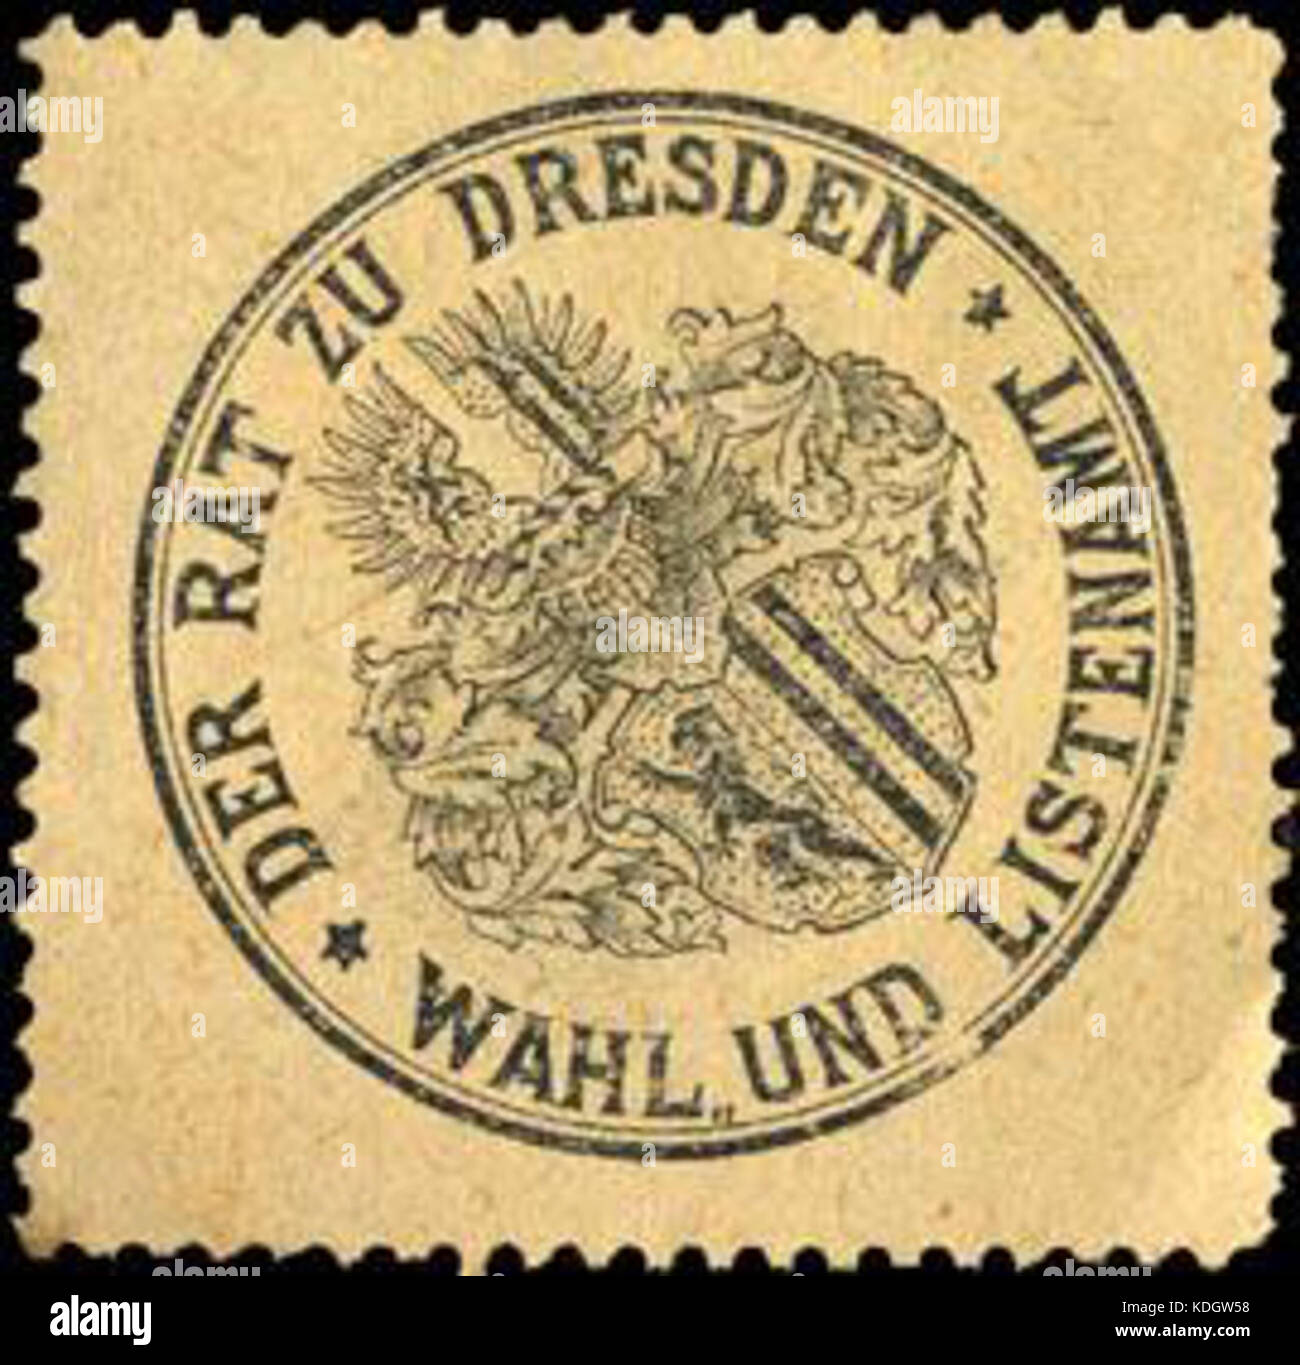 Siegelmarke Der Rat zu Dresden Wahl und Listenamt W0218122 Foto Stock